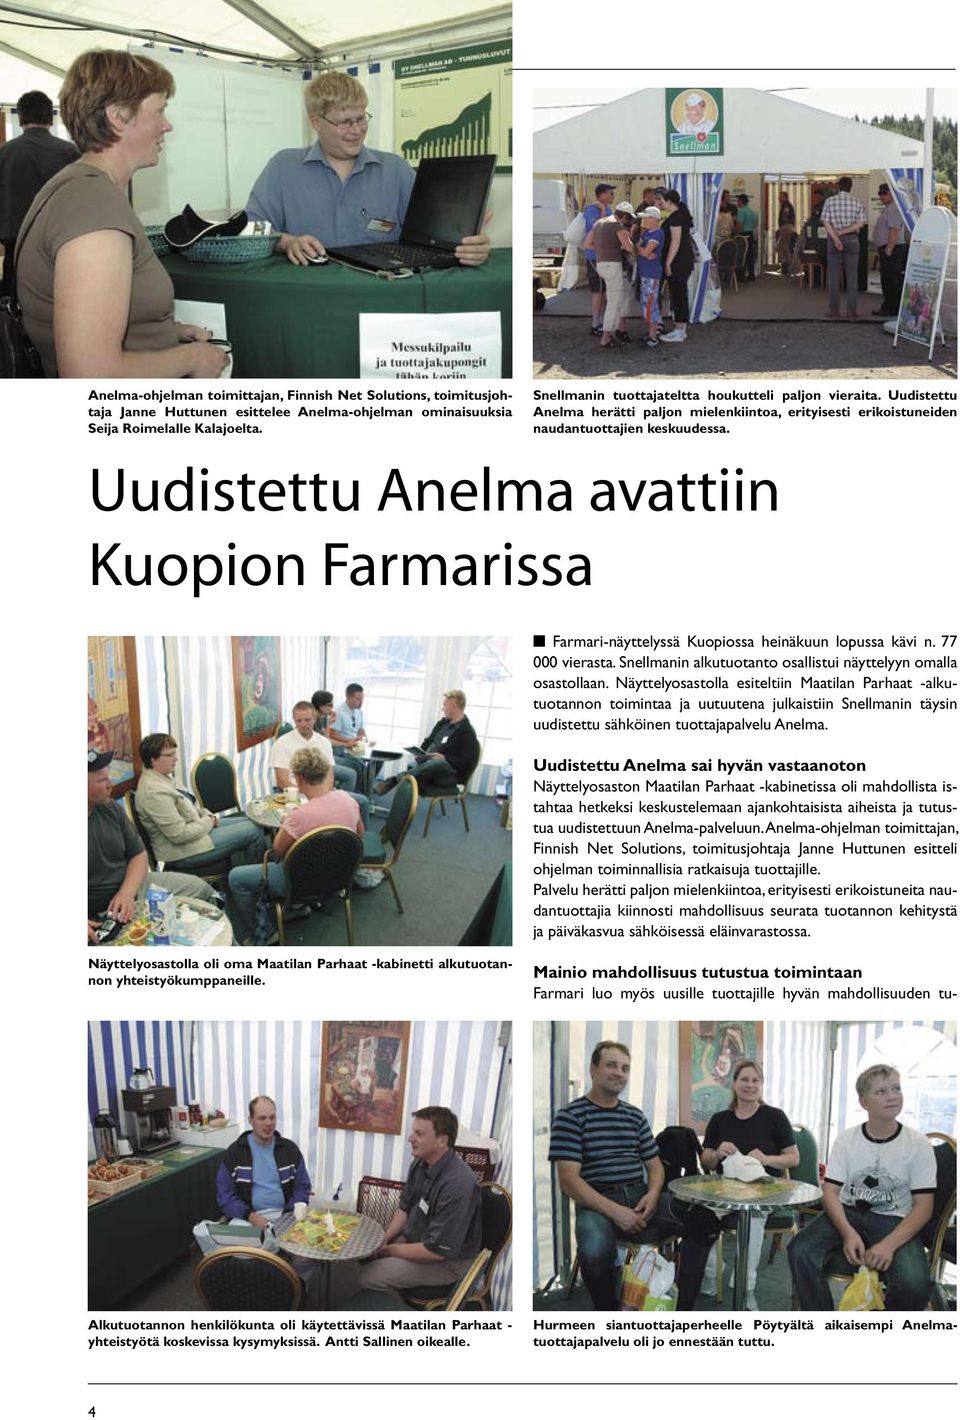 Uudistettu Anelma avattiin Kuopion Farmarissa Farmari-näyttelyssä Kuopiossa heinäkuun lopussa kävi n. 77 000 vierasta. Snellmanin alkutuotanto osallistui näyttelyyn omalla osastollaan.